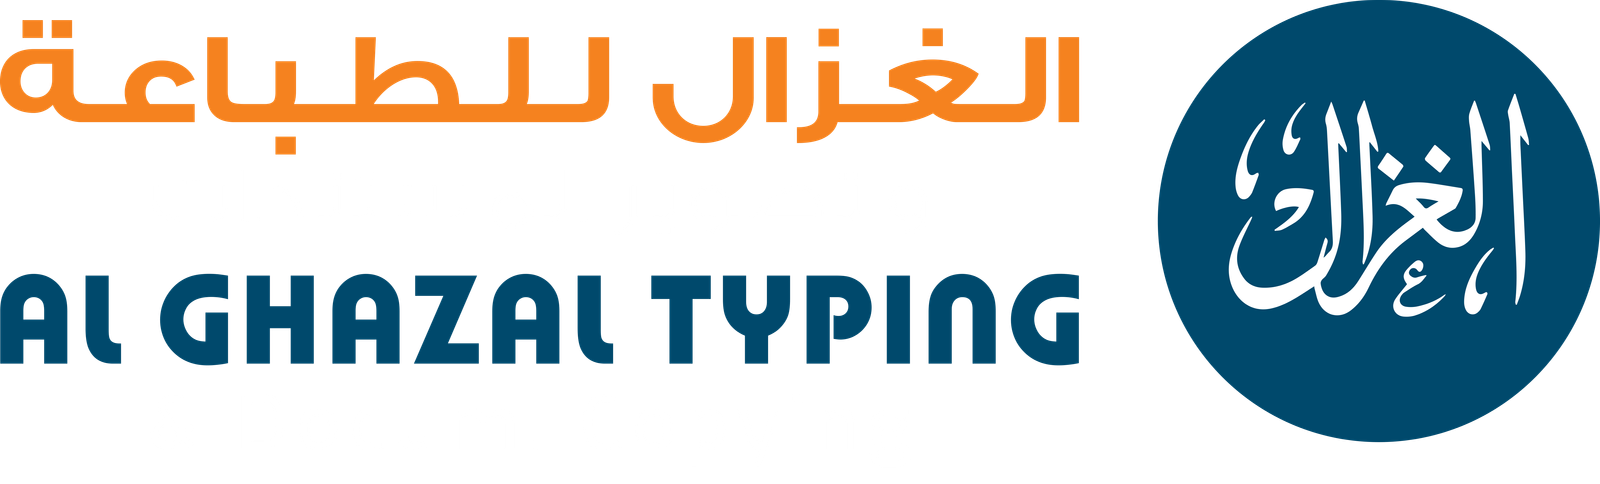 Al GHAZAL TYPING